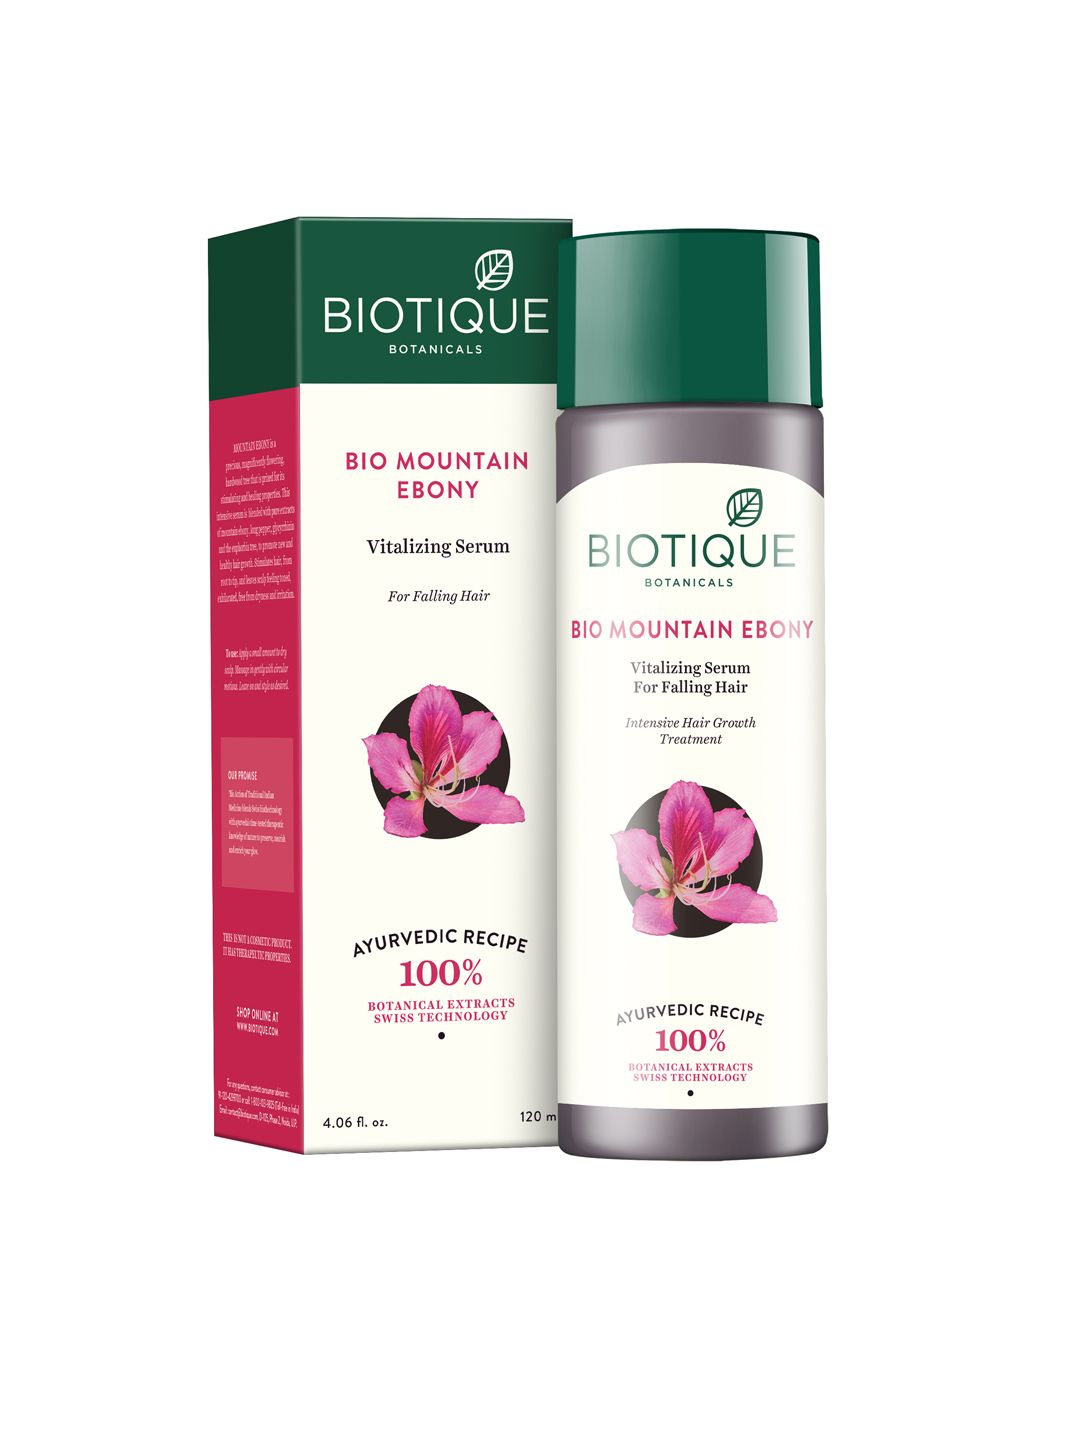 Biotique Set Of Serum & Shampoo Price in India